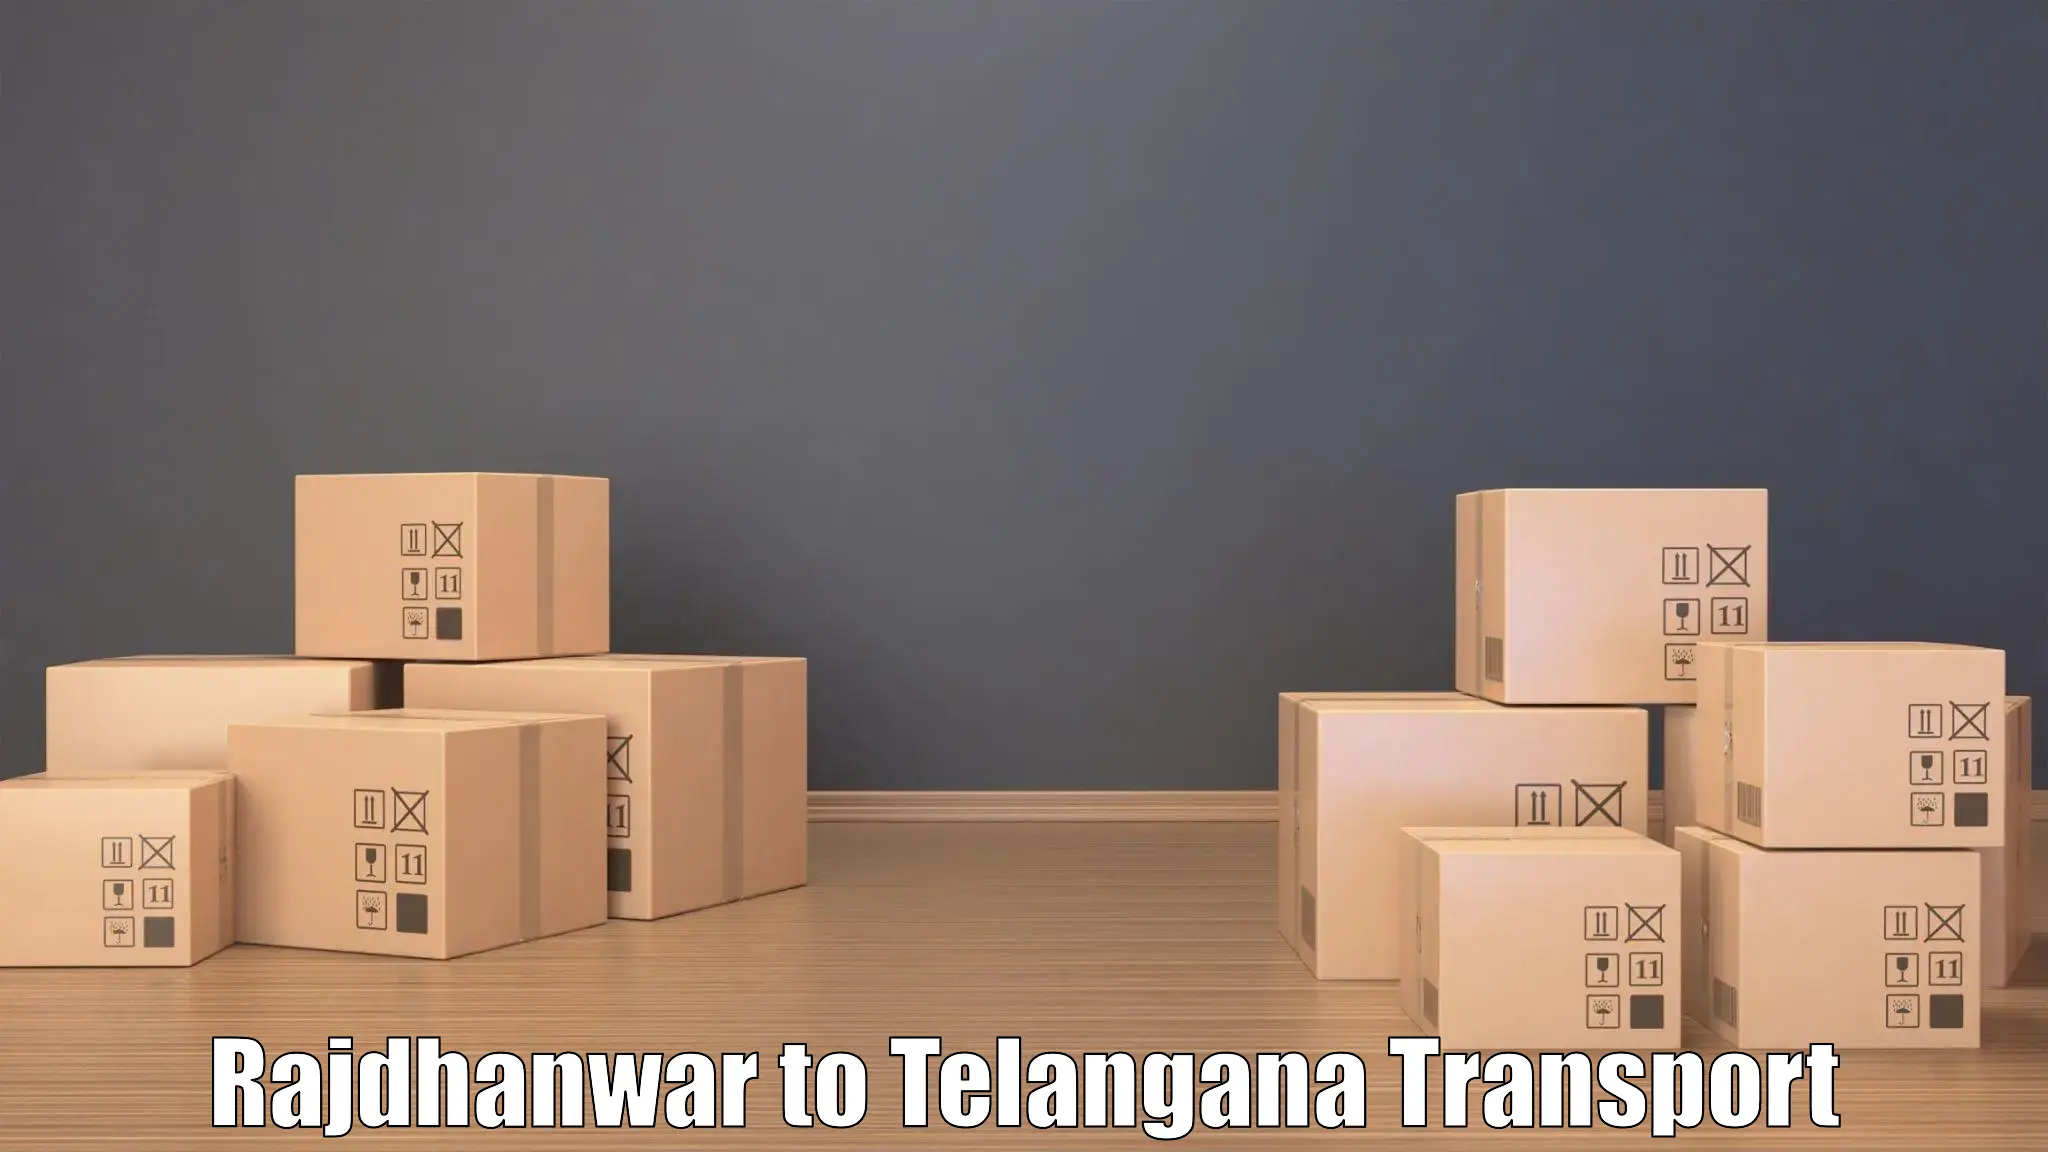 International cargo transportation services Rajdhanwar to Dornakal